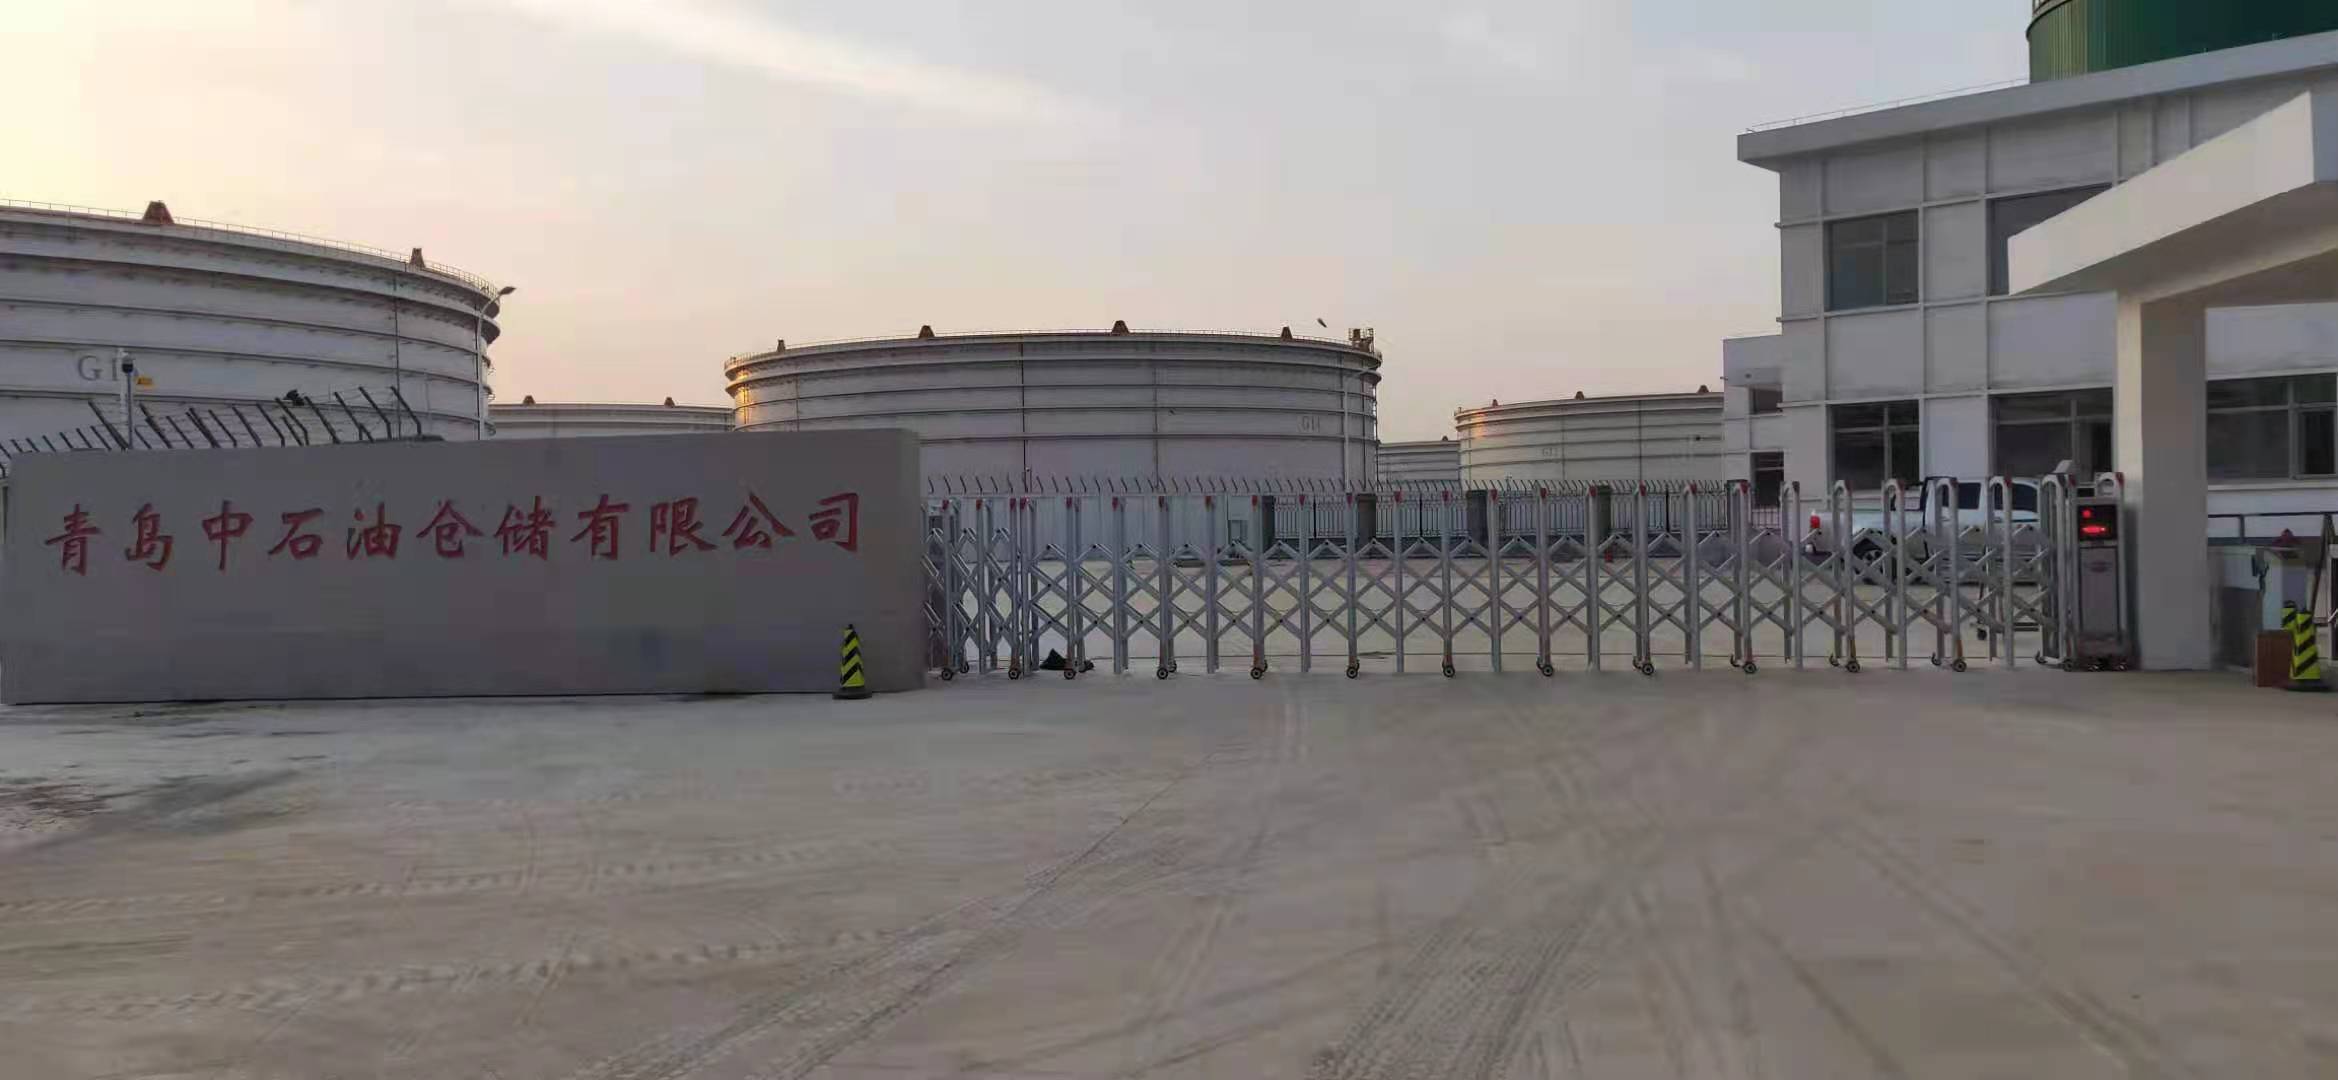 青岛中石油仓储有限公司14米和谐370